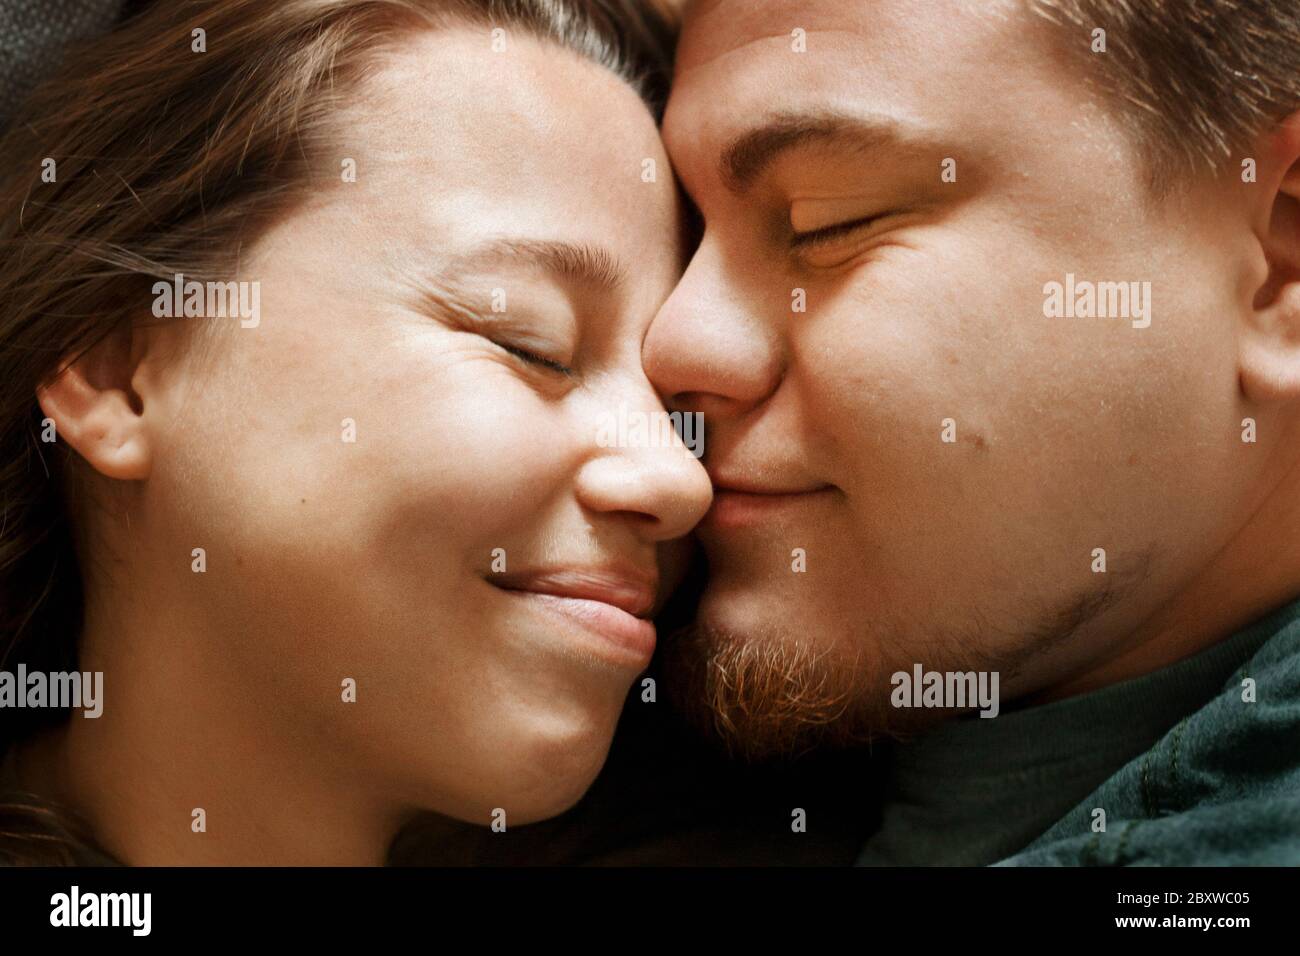 Emotionales Porträt von liebevollem lächelndem küssendem Paar, Nahaufnahme. Junge liebevolle Freund und Freundin, echte Menschen. Stockfoto